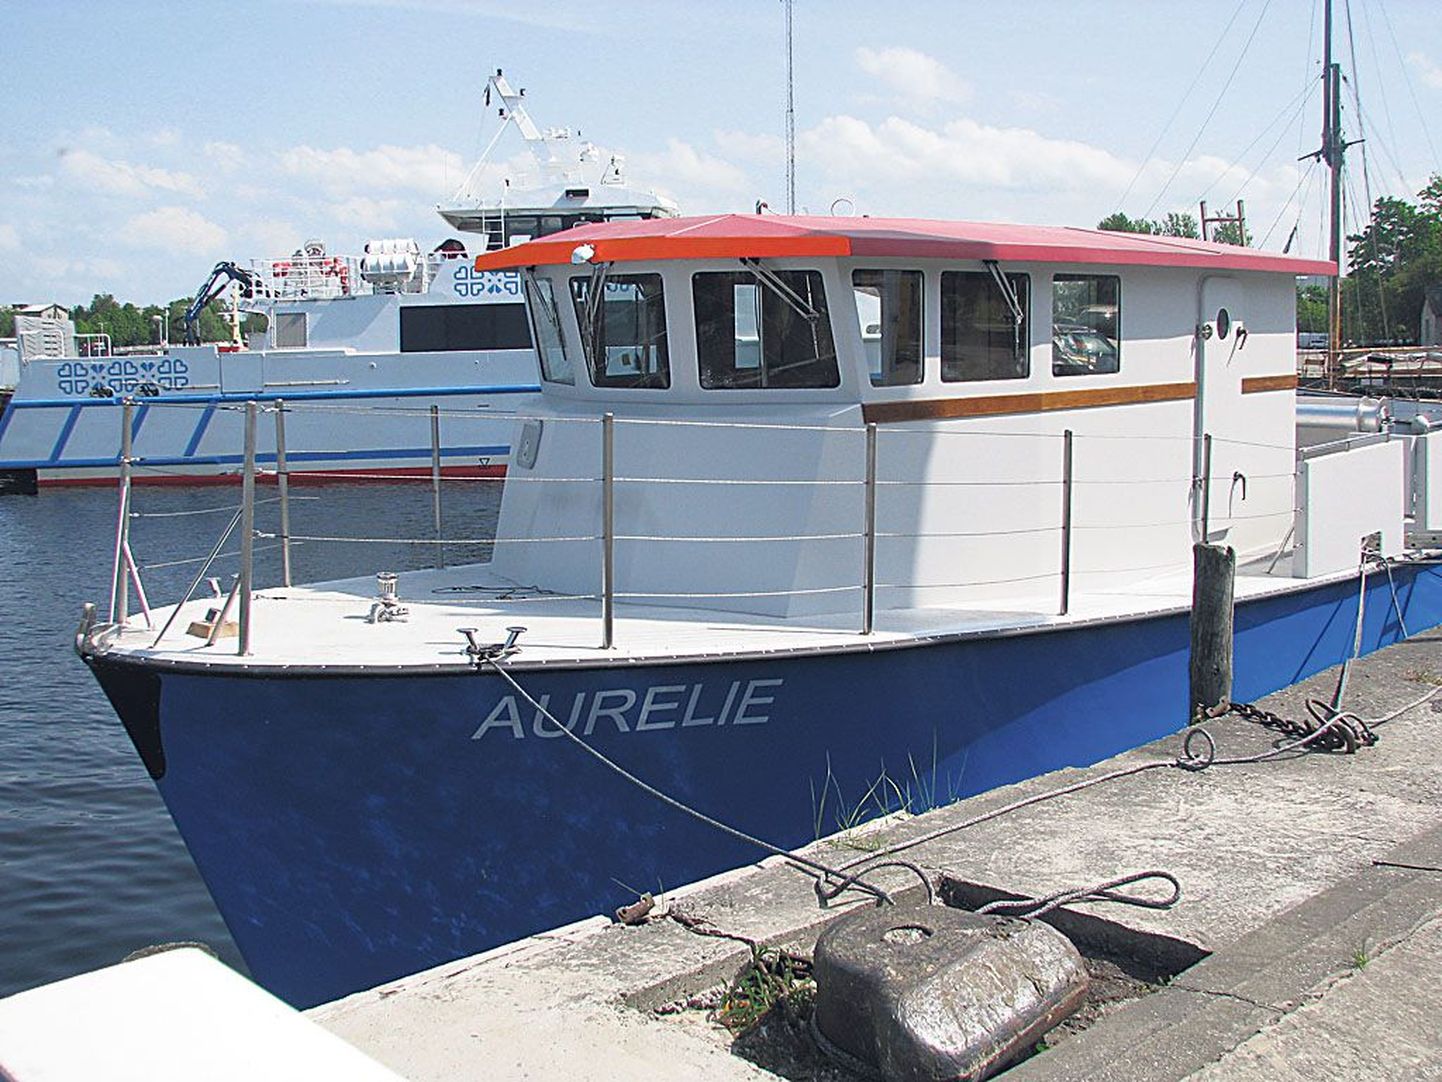 Pärnus lasti eile vette mereinstituudi uus uurimislaev Aurelie.